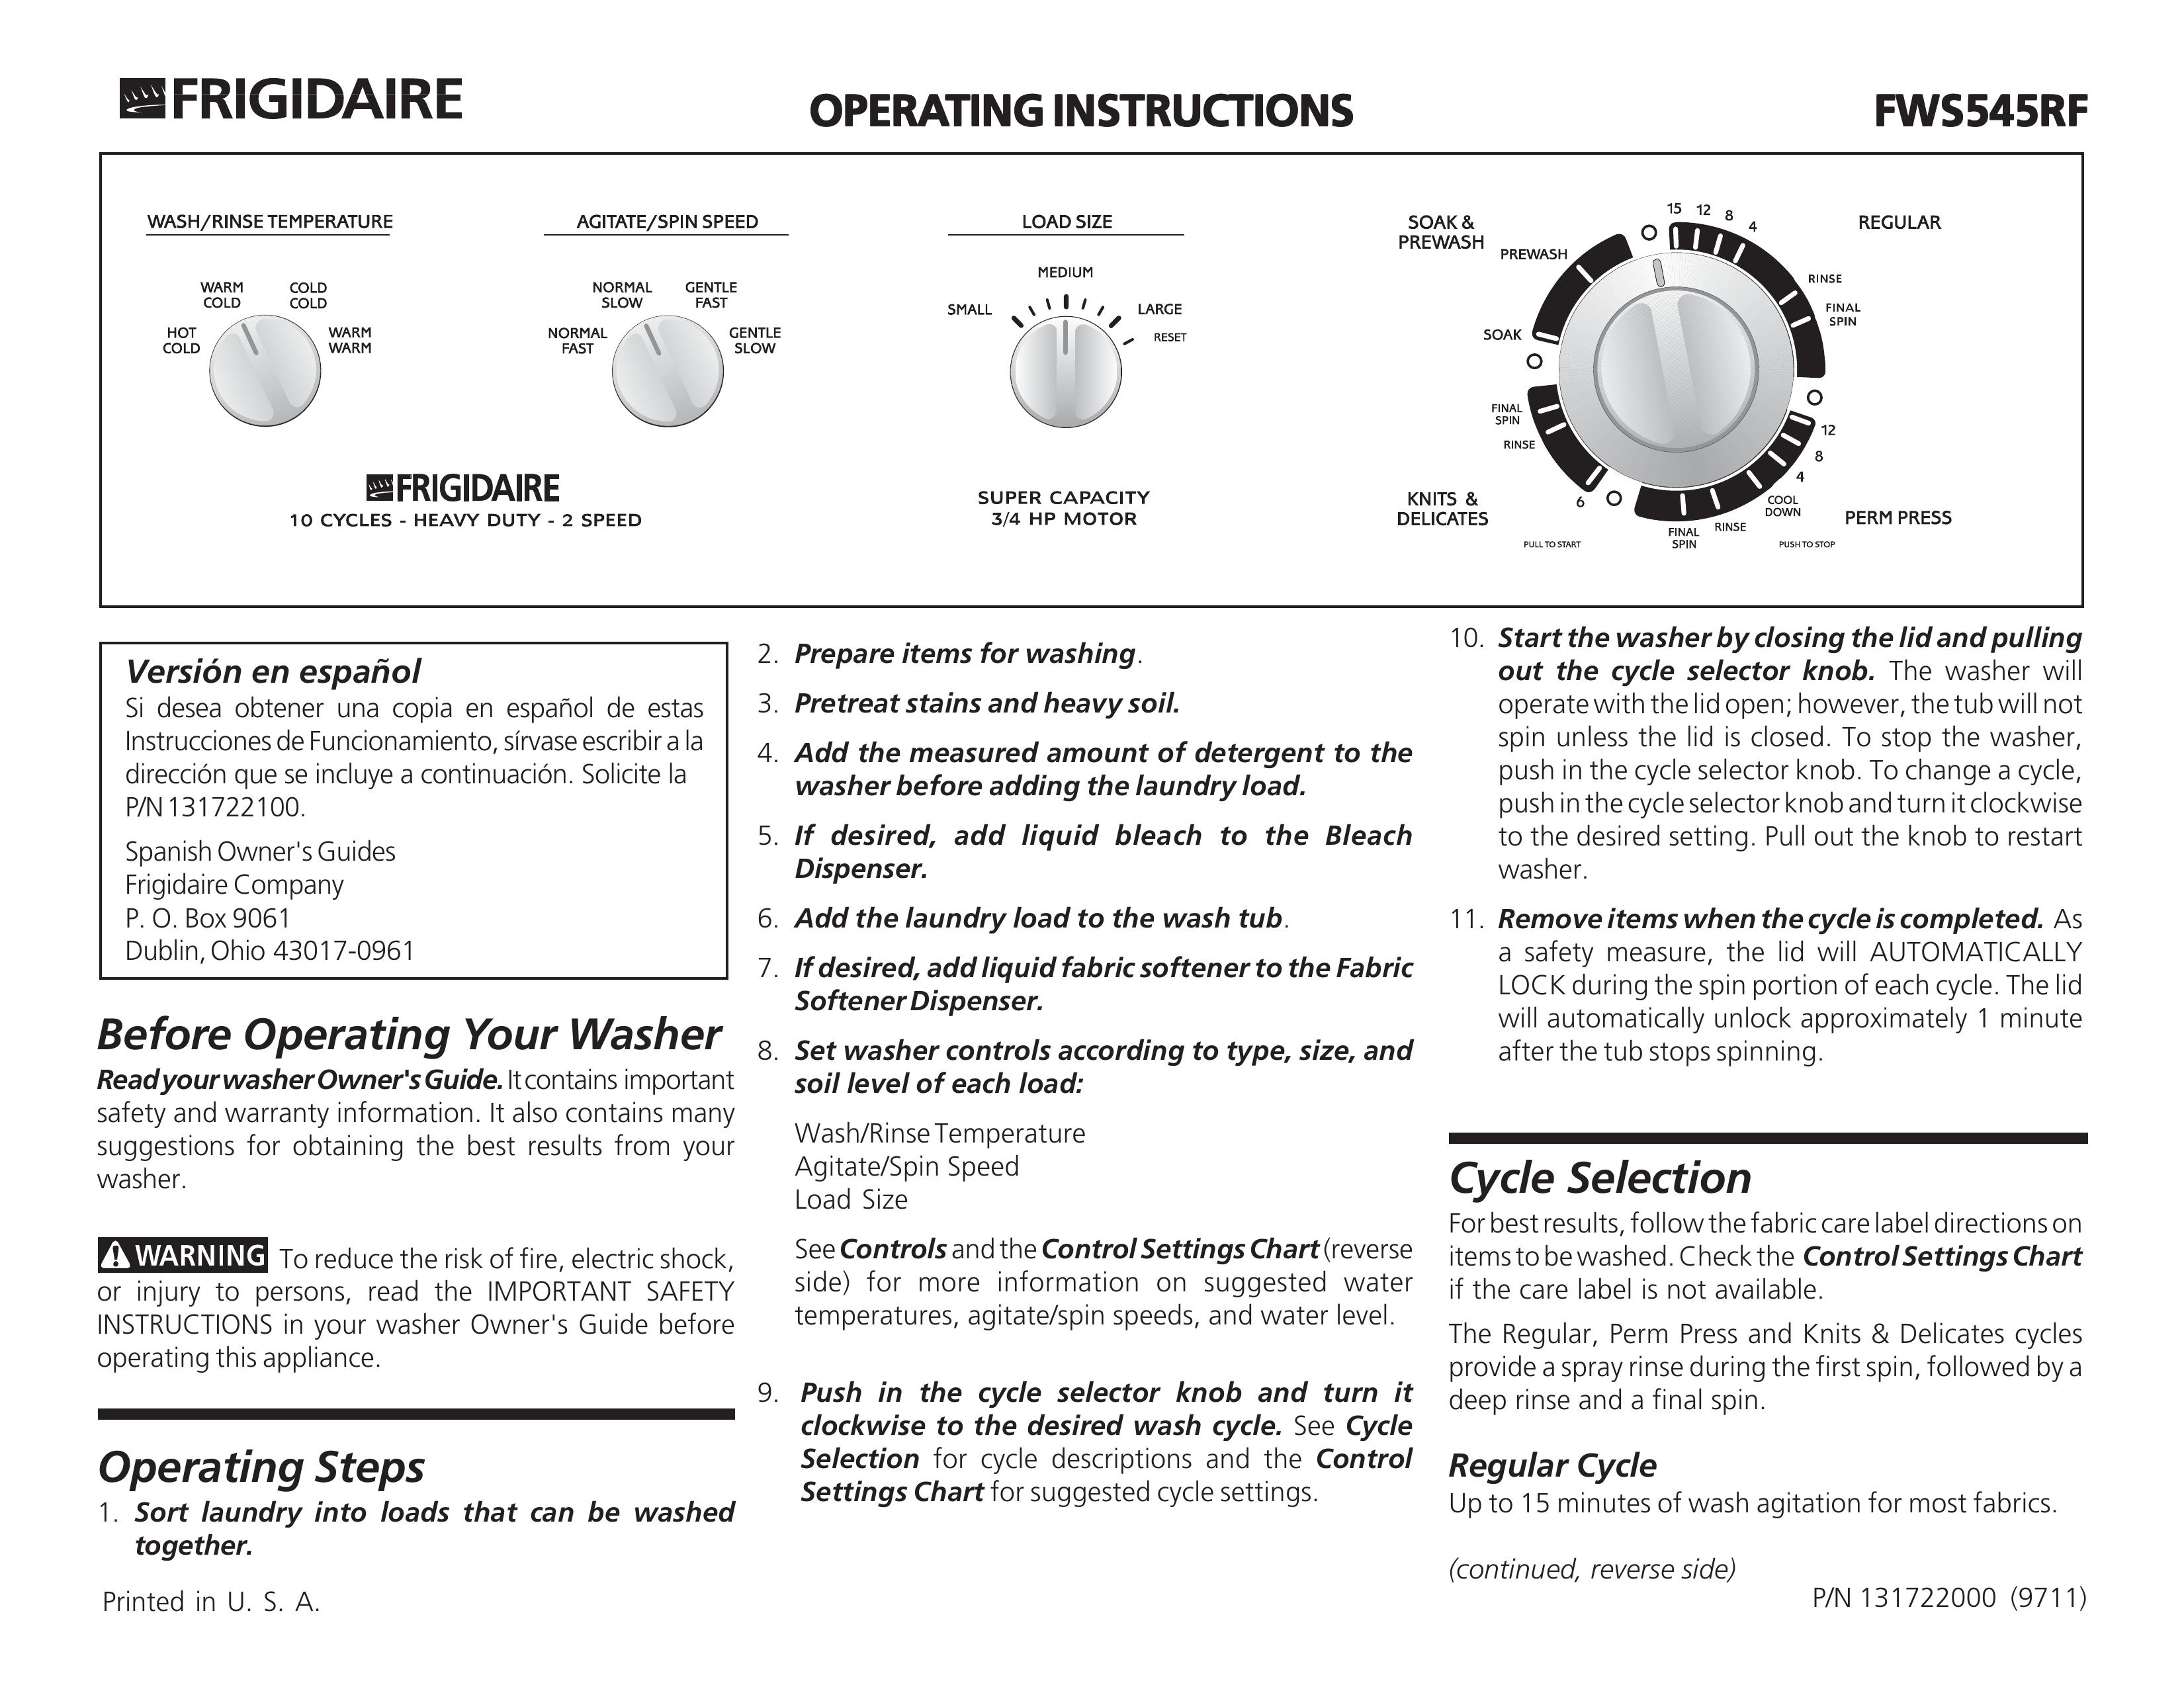 Frigidaire FWS545RF Washer/Dryer User Manual